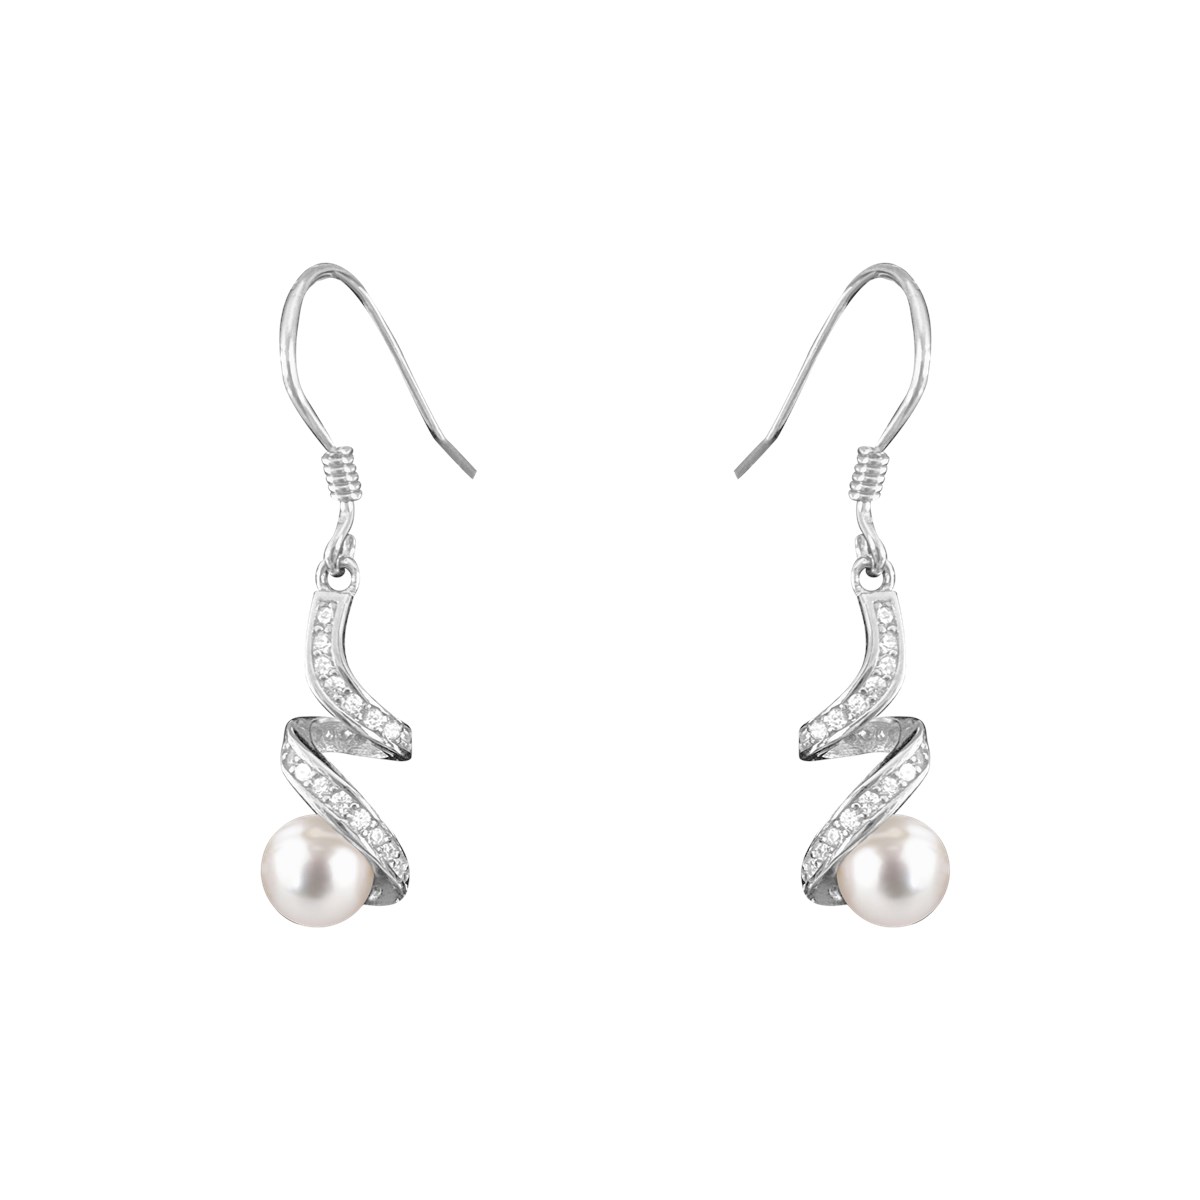 Boucles d'oreilles perle blanche en argent 925 rhodié avec oxydes de zirconium